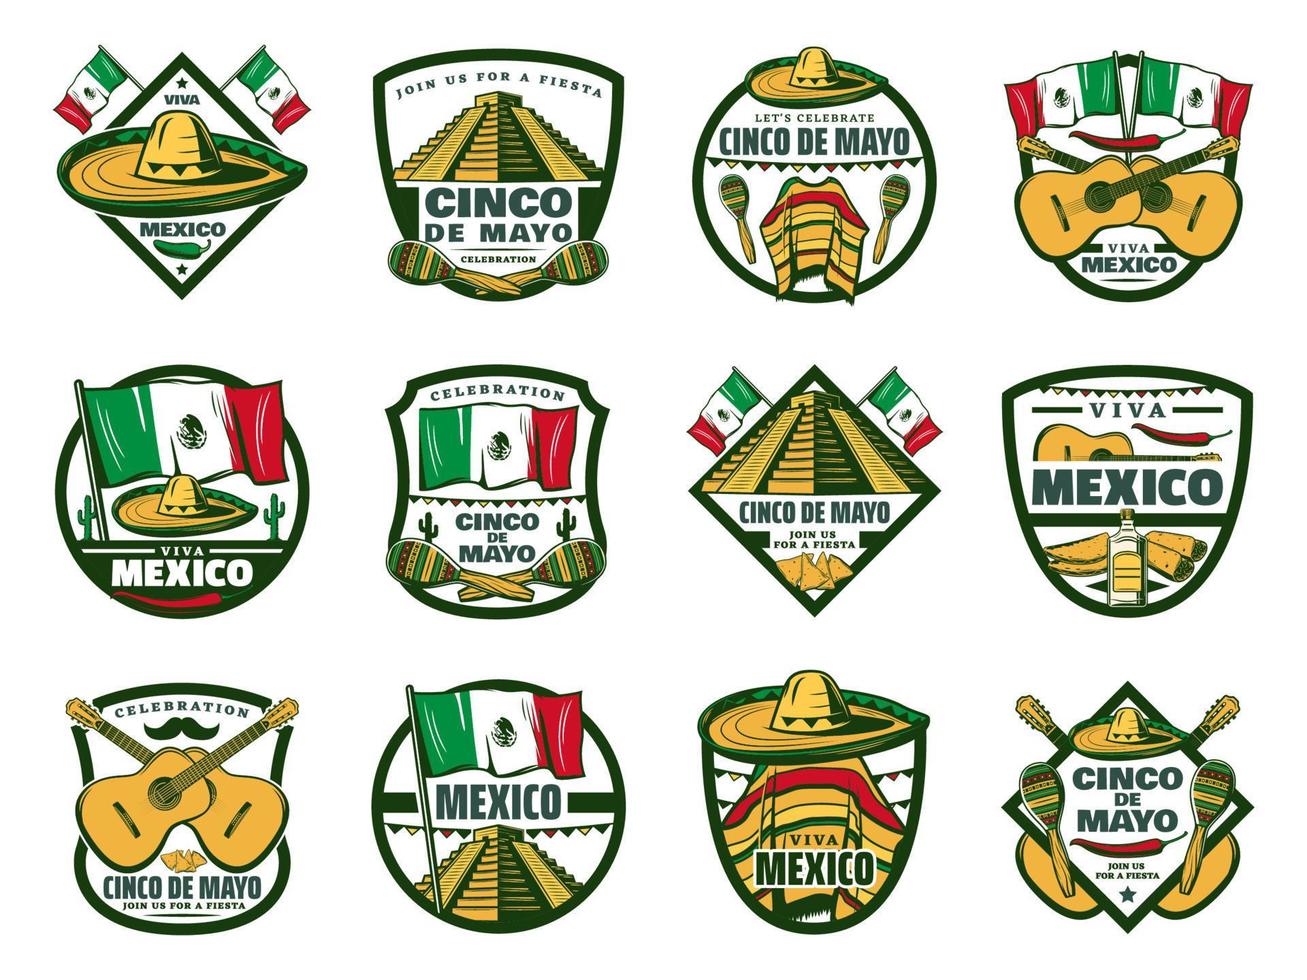 etiqueta festiva del cinco de mayo para la fiesta mexicana vector